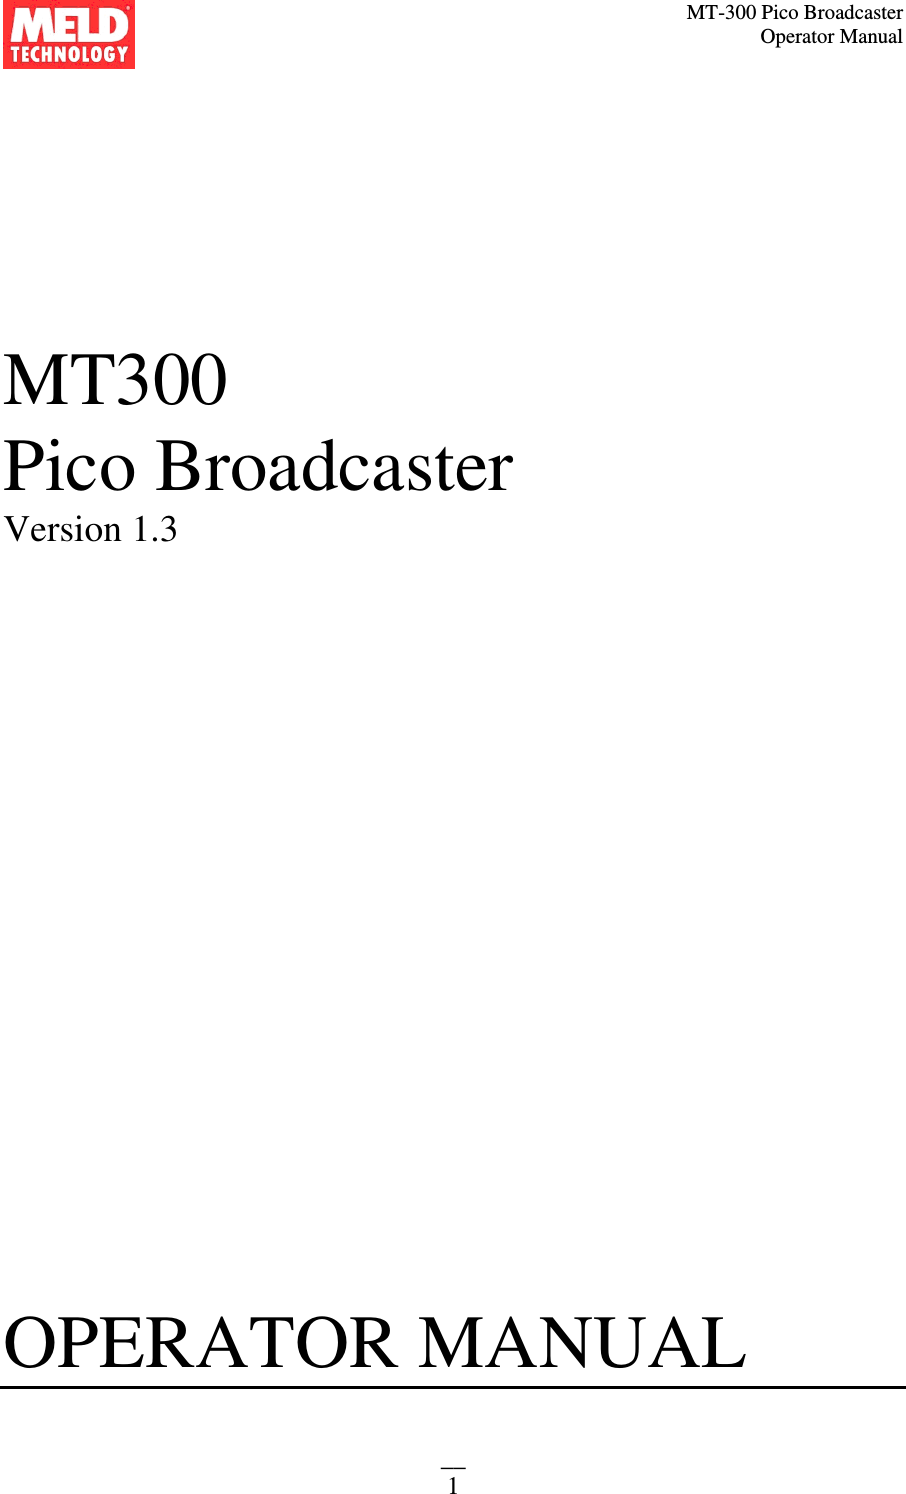 MT-300 Pico Broadcaster                                                                                                                                             Operator Manual __ 1    MT300 Pico Broadcaster  Version 1.3                         OPERATOR MANUAL    